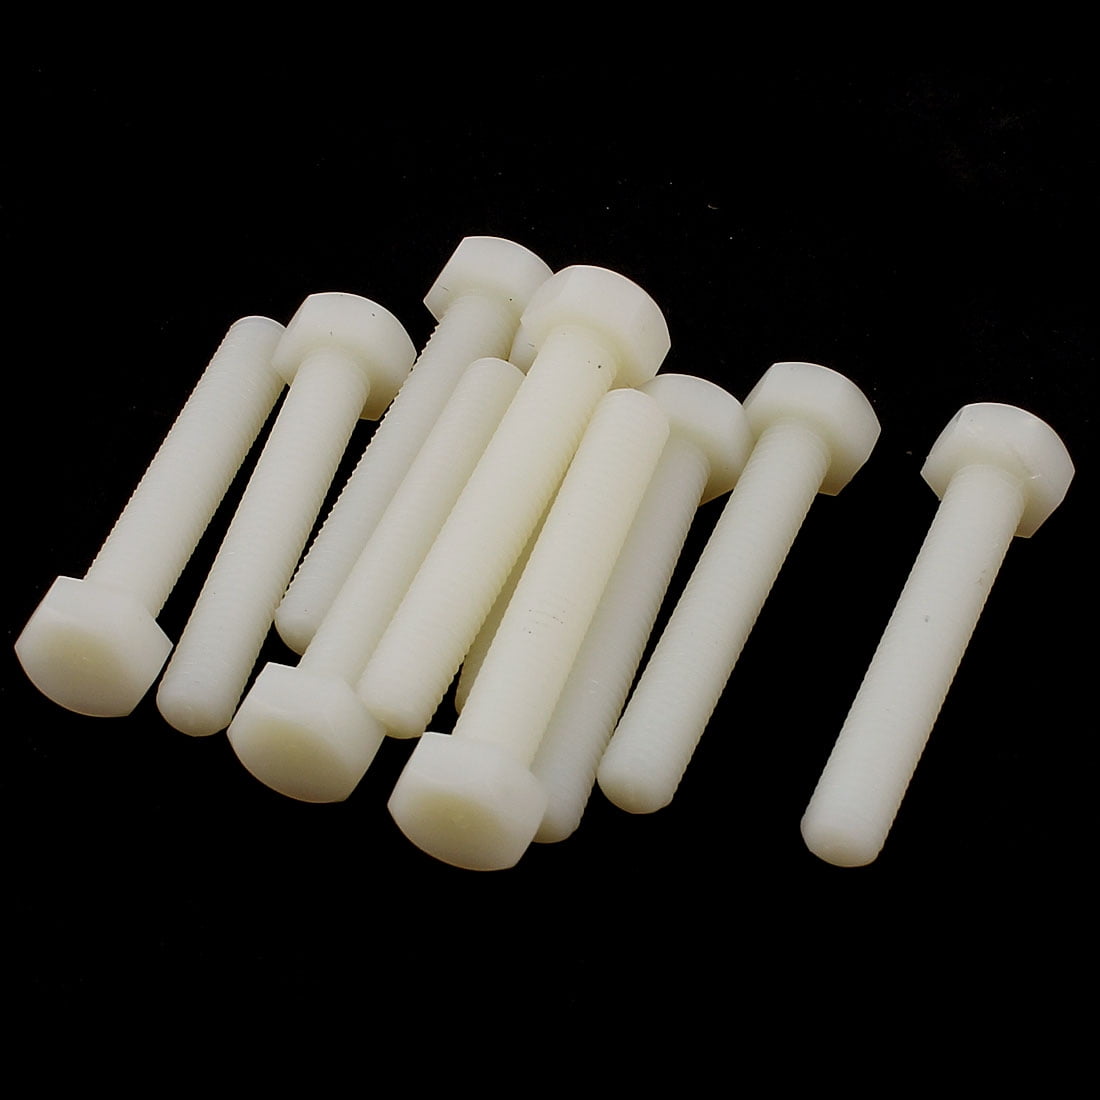 100 PACK NUT & BOLT PLASTIC/NYLON COVER CAP 13mm ACROSS FLATS WHITE M8 8mm 